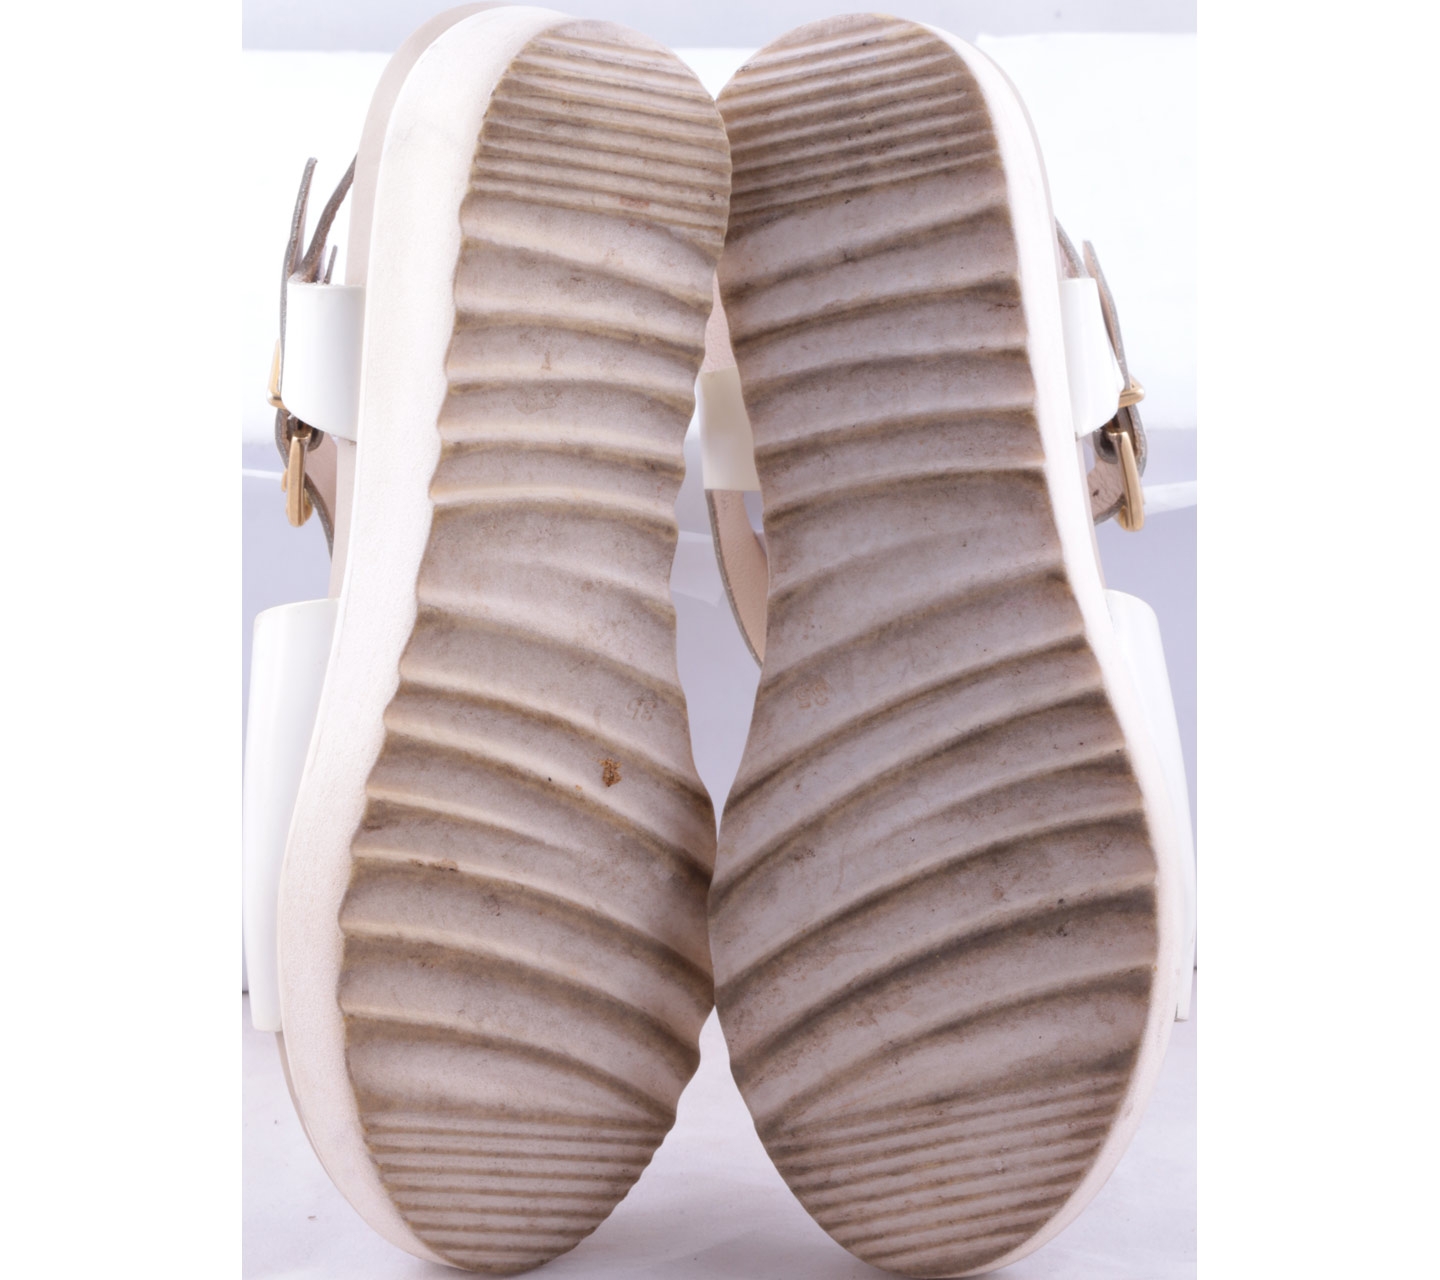 Mikaela White Sandals